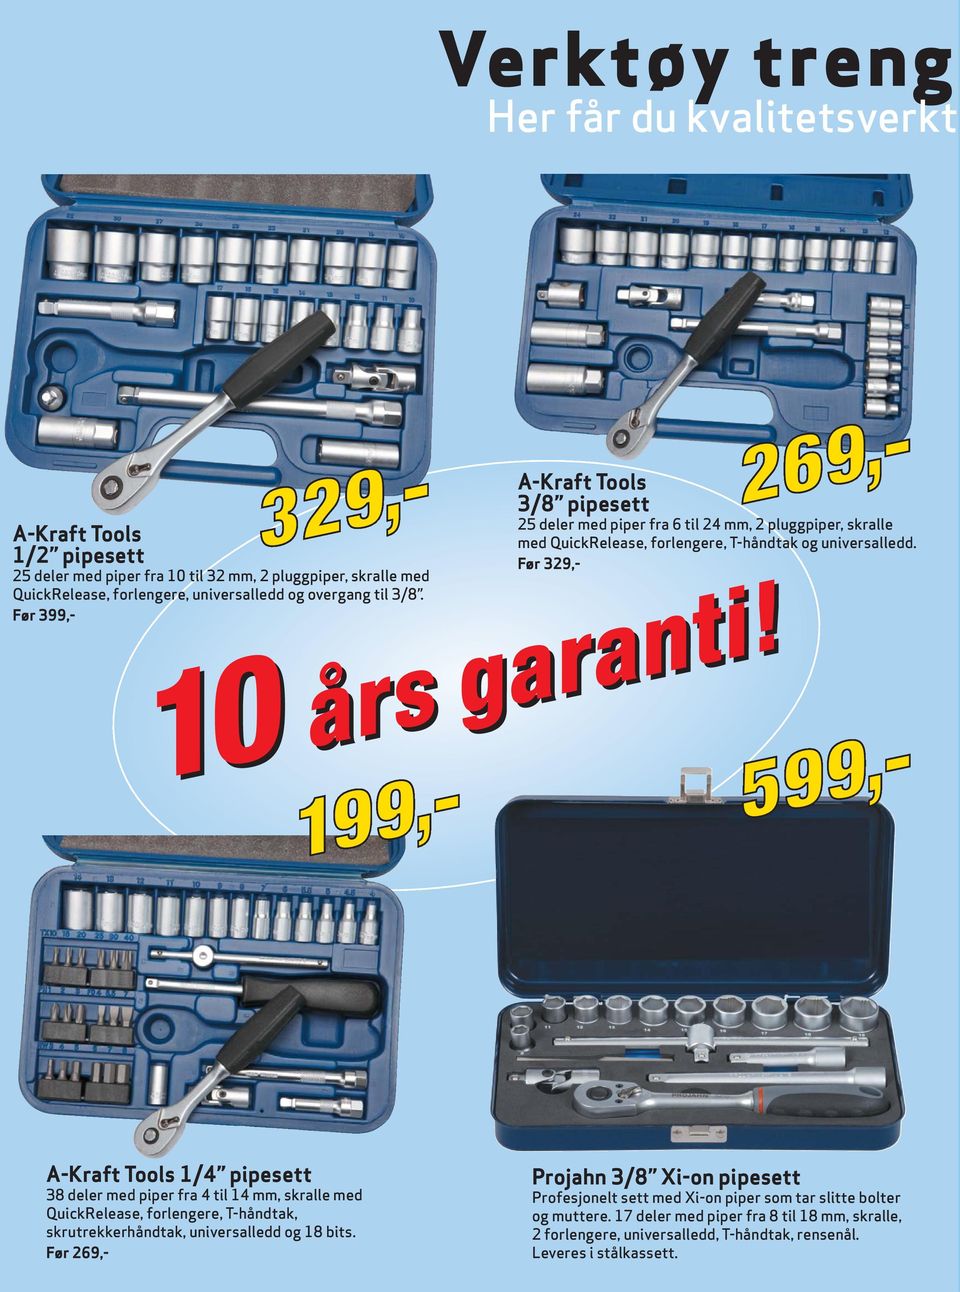 A-Kraft Tools 1/4 pipesett 38 deler med piper fra 4 til 14 mm, skralle med QuickRelease, forlengere, T-håndtak, skrutrekkerhåndtak, universalledd og 18 bits.